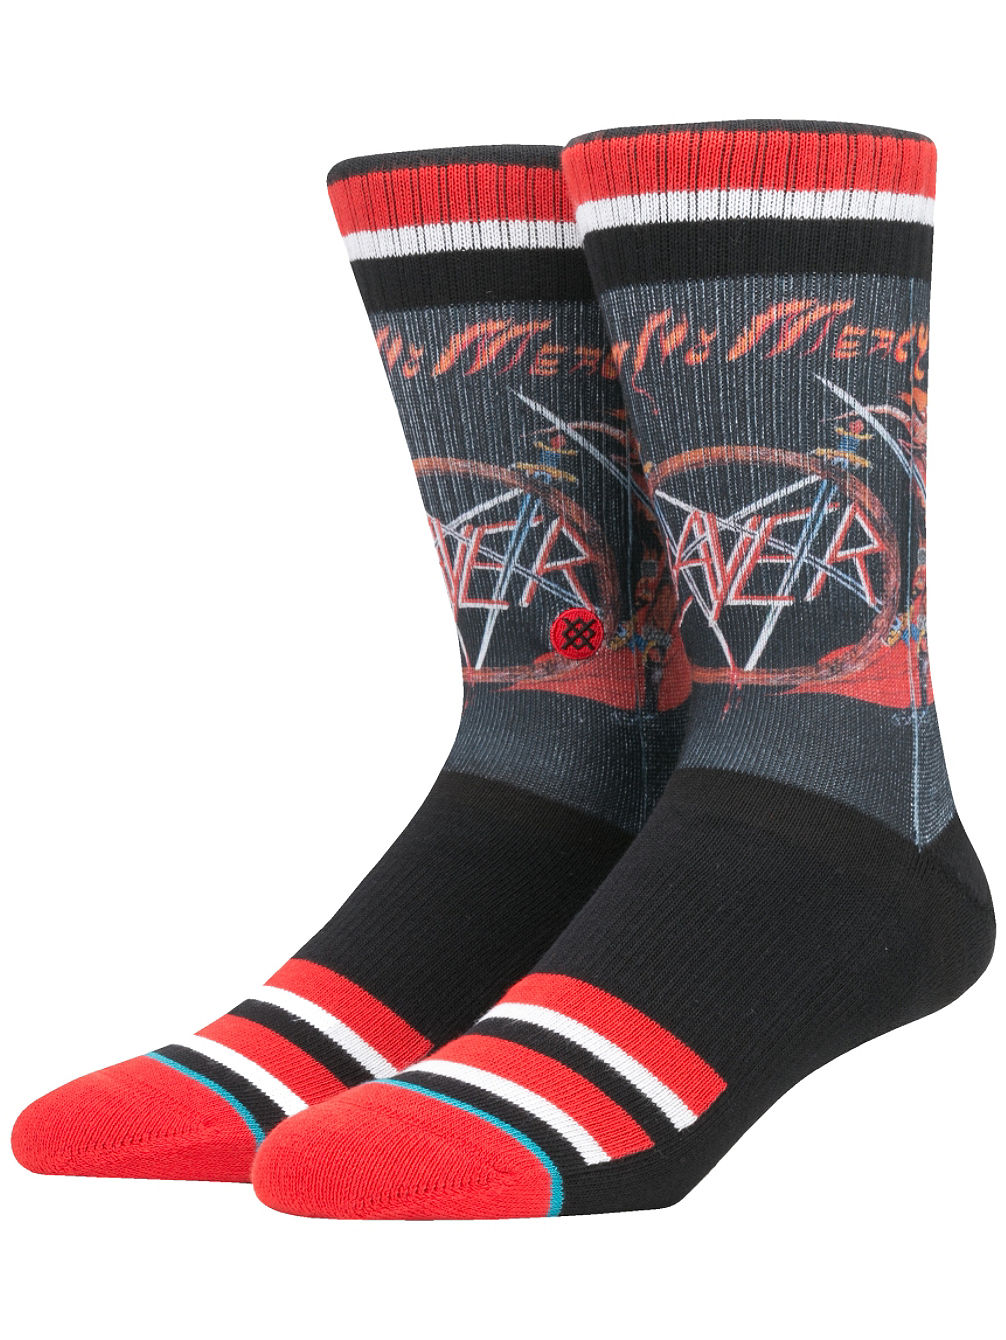 Slayer Socks